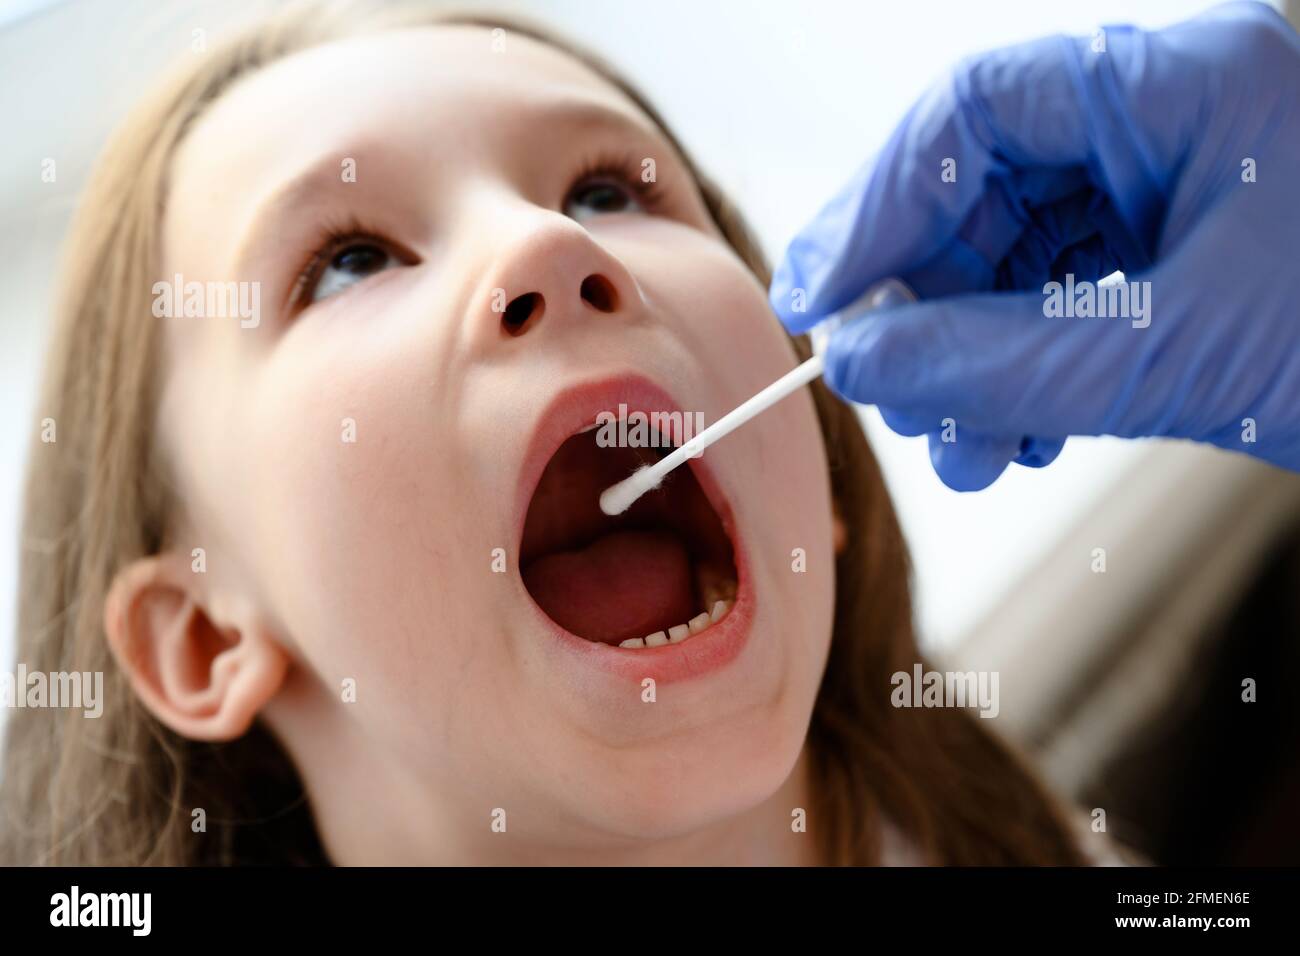 Kid öffnet den Mund für den COVID-19-Test, der Arzt hält während der Coronavirus-Pandemie einen Abstrich für die Speichelprobe eines niedlichen Kindes. Krankenschwester Hand und kleines Mädchen Gesicht cl Stockfoto